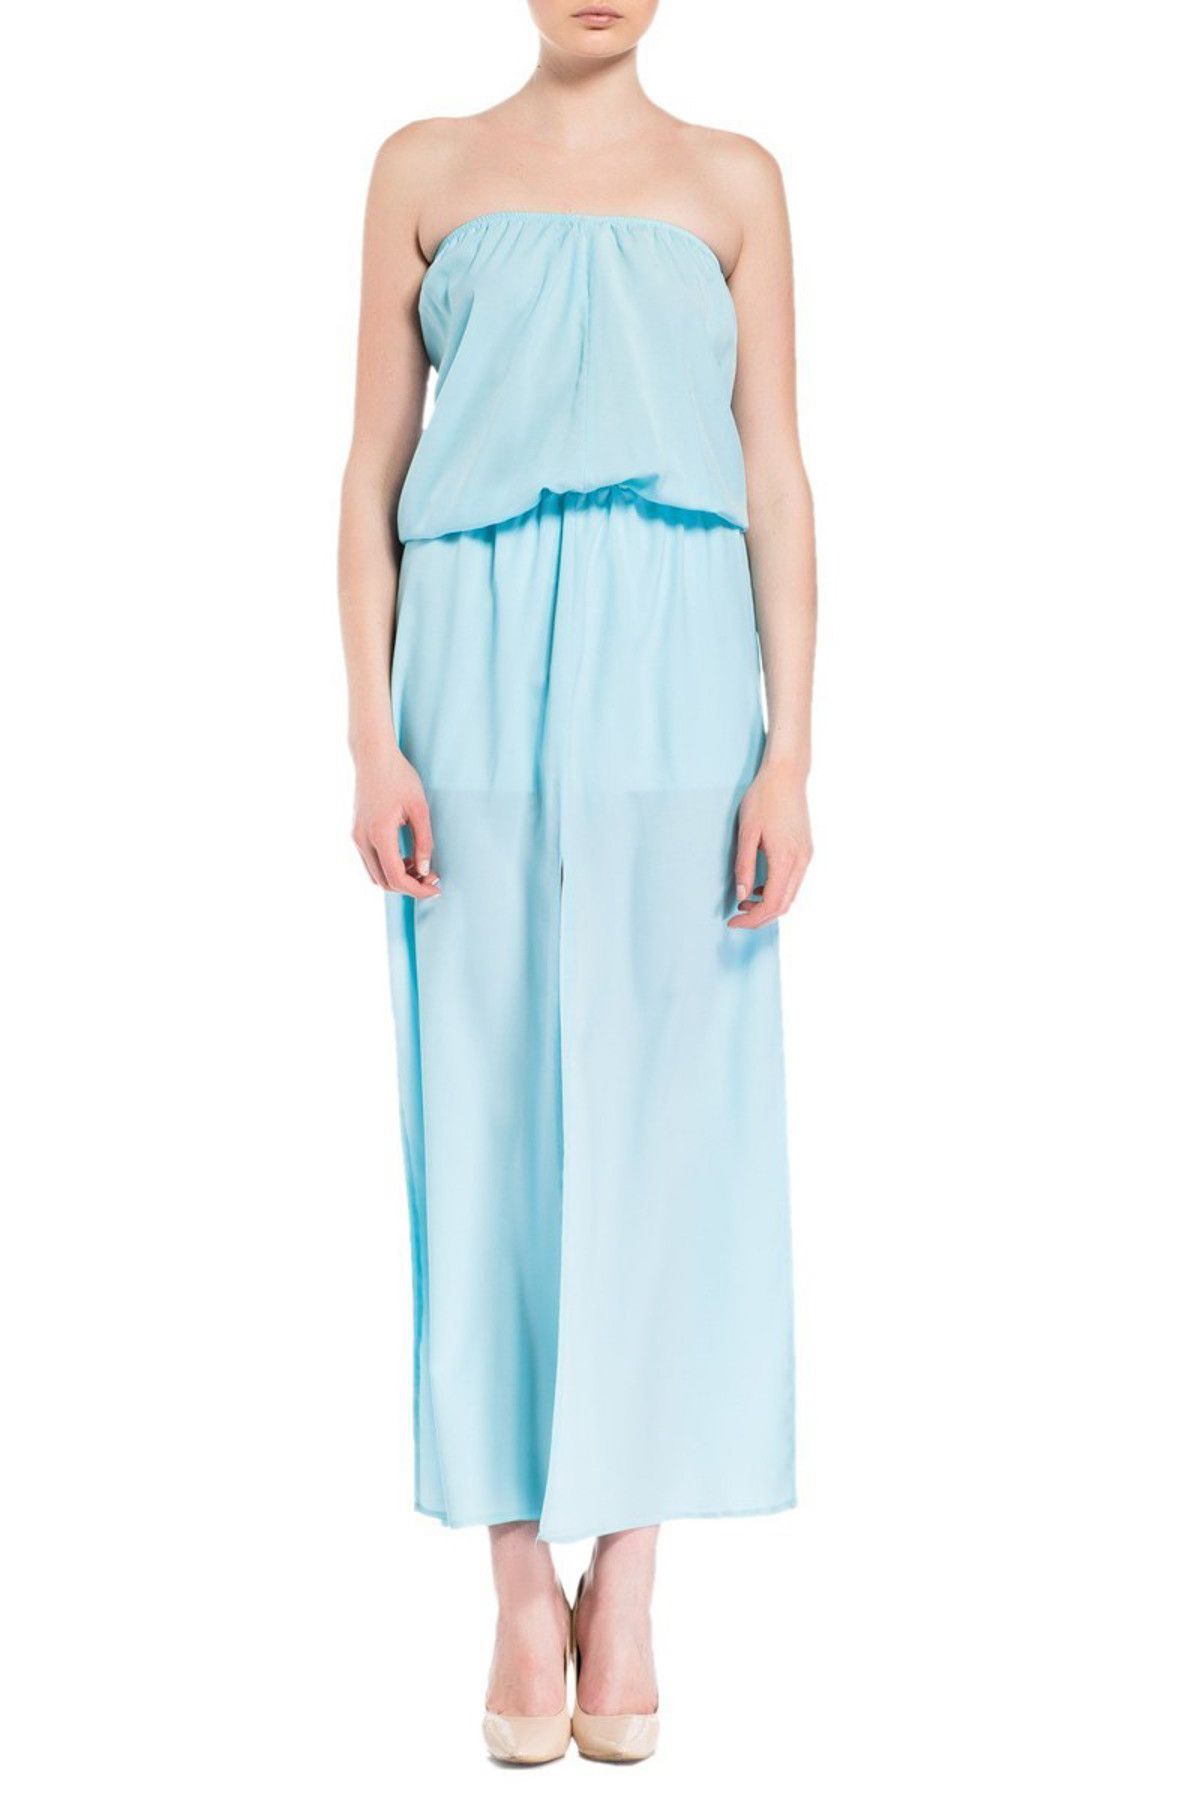 Spazio Kadın Mavı Balsamına Kollu Elbise 50025080